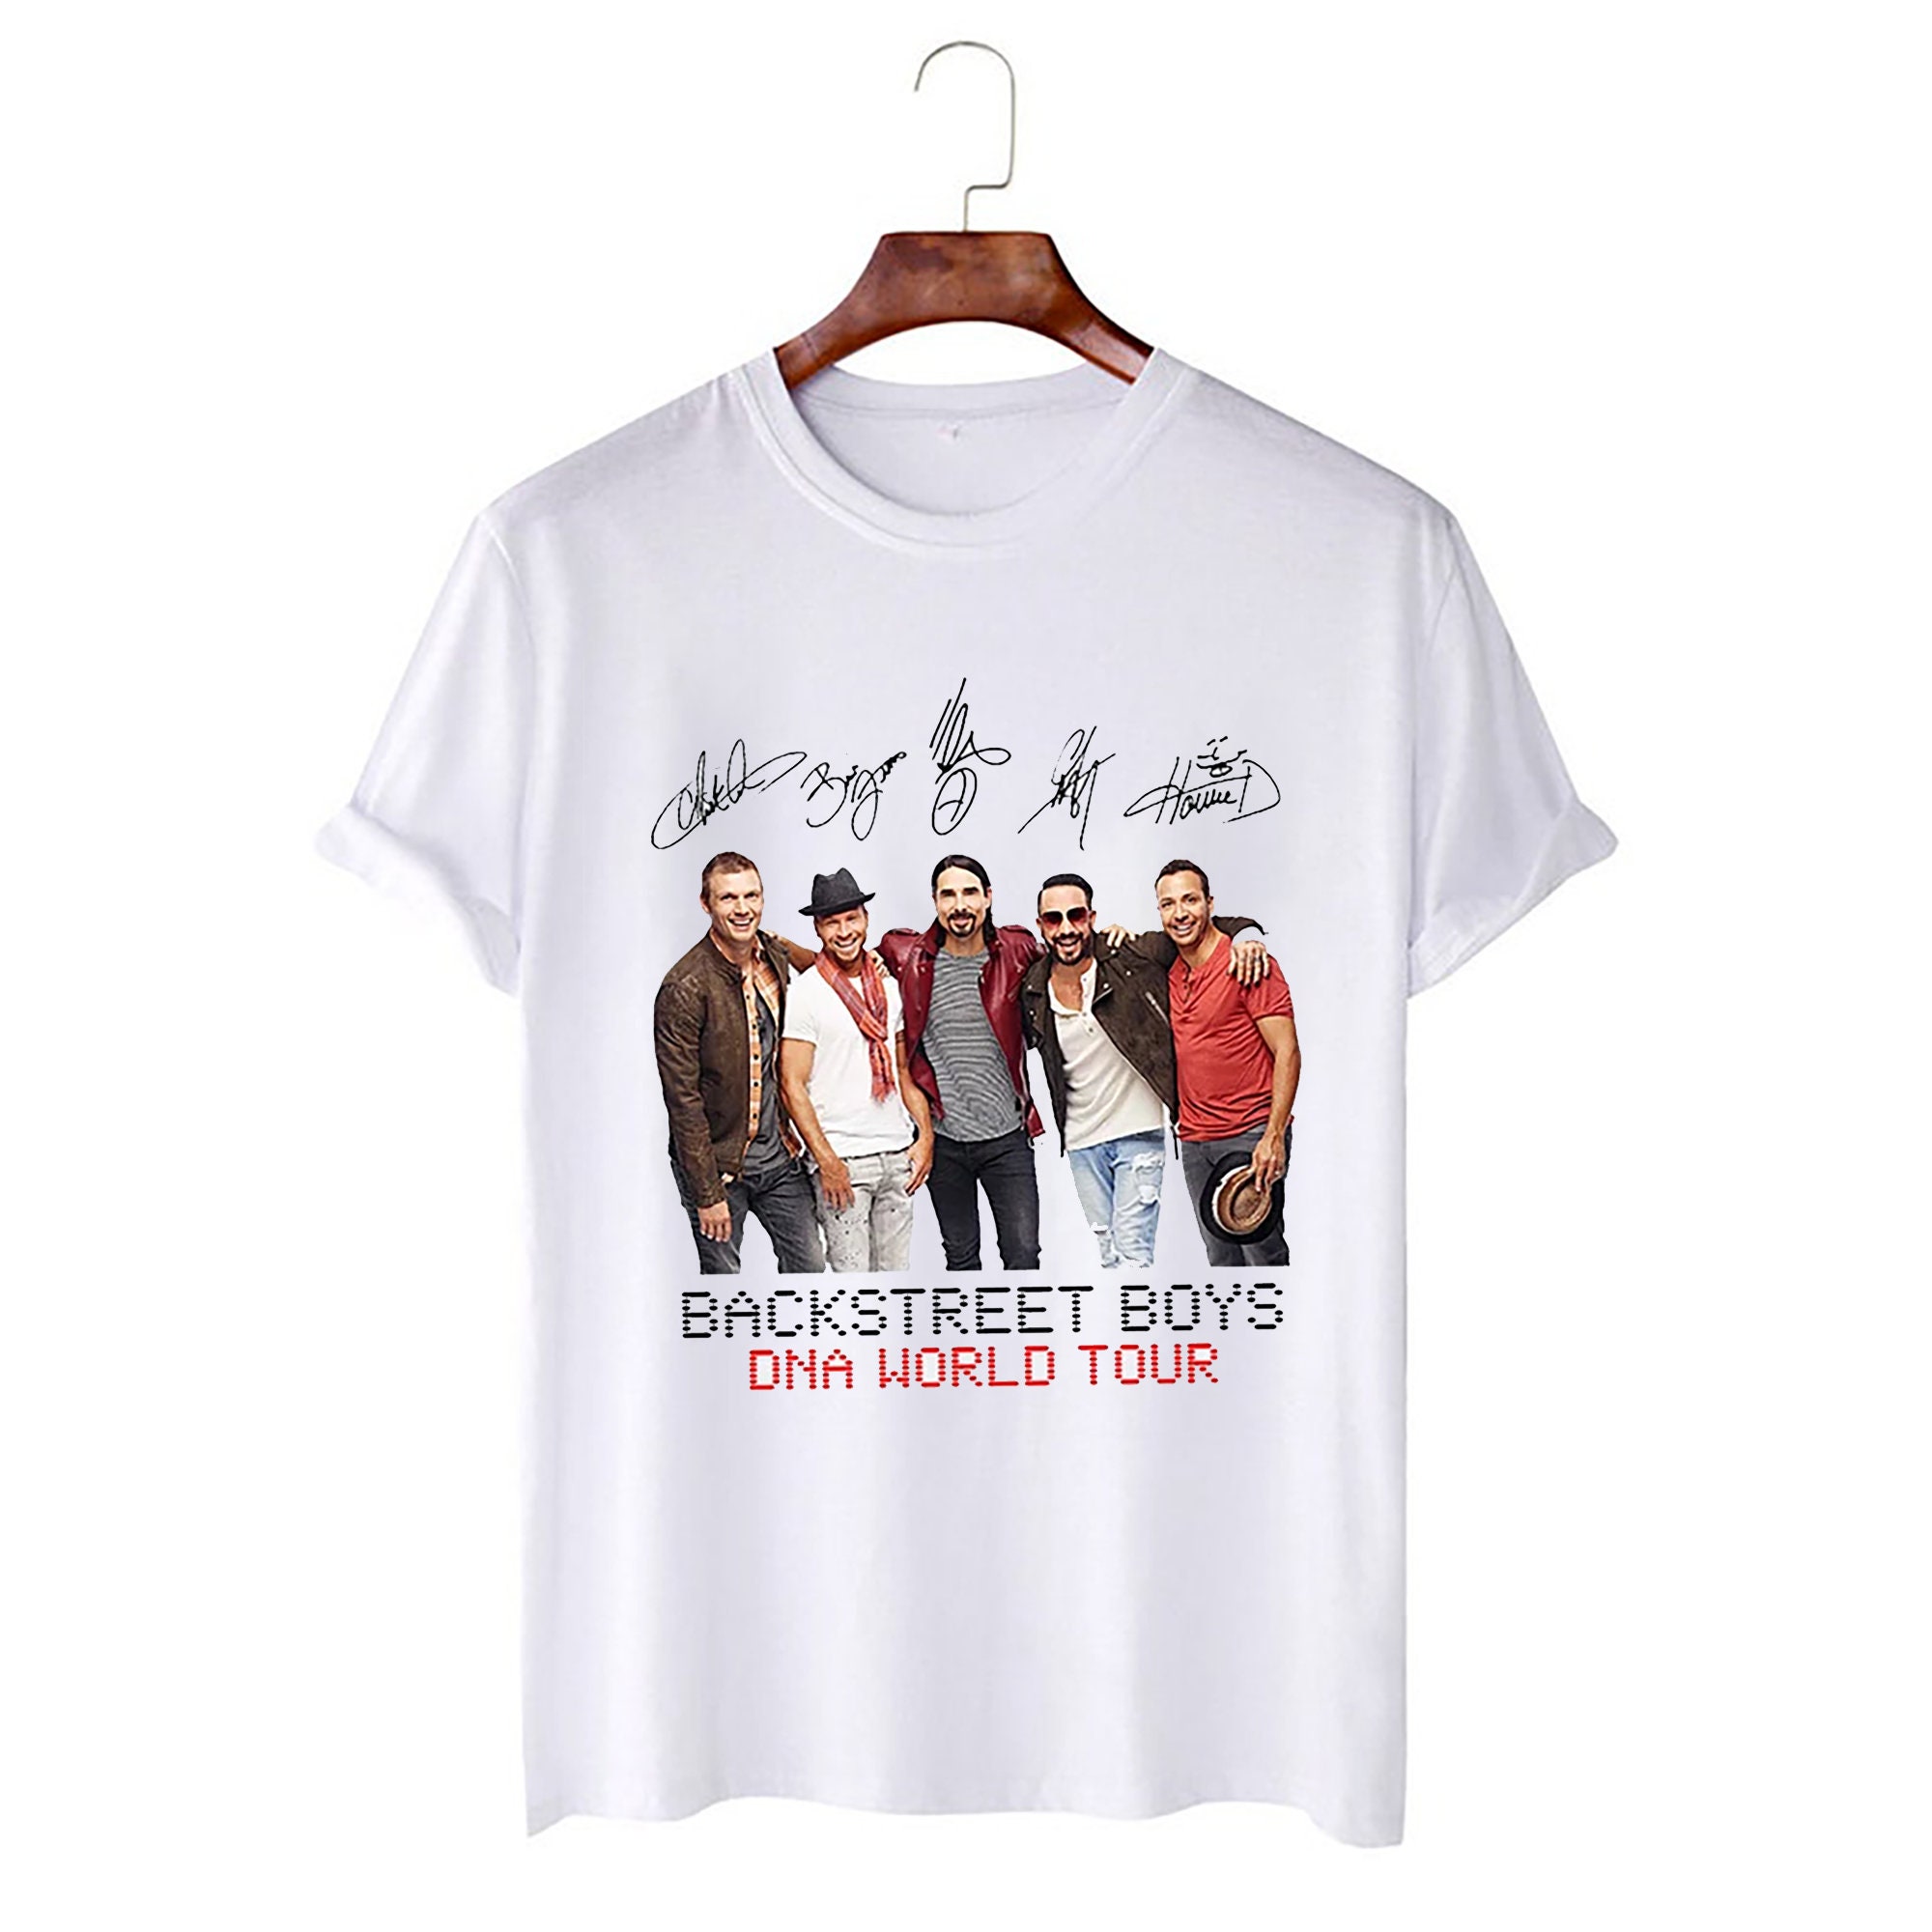 Backstreet Boys DNA World Tour BSB Band Shirt